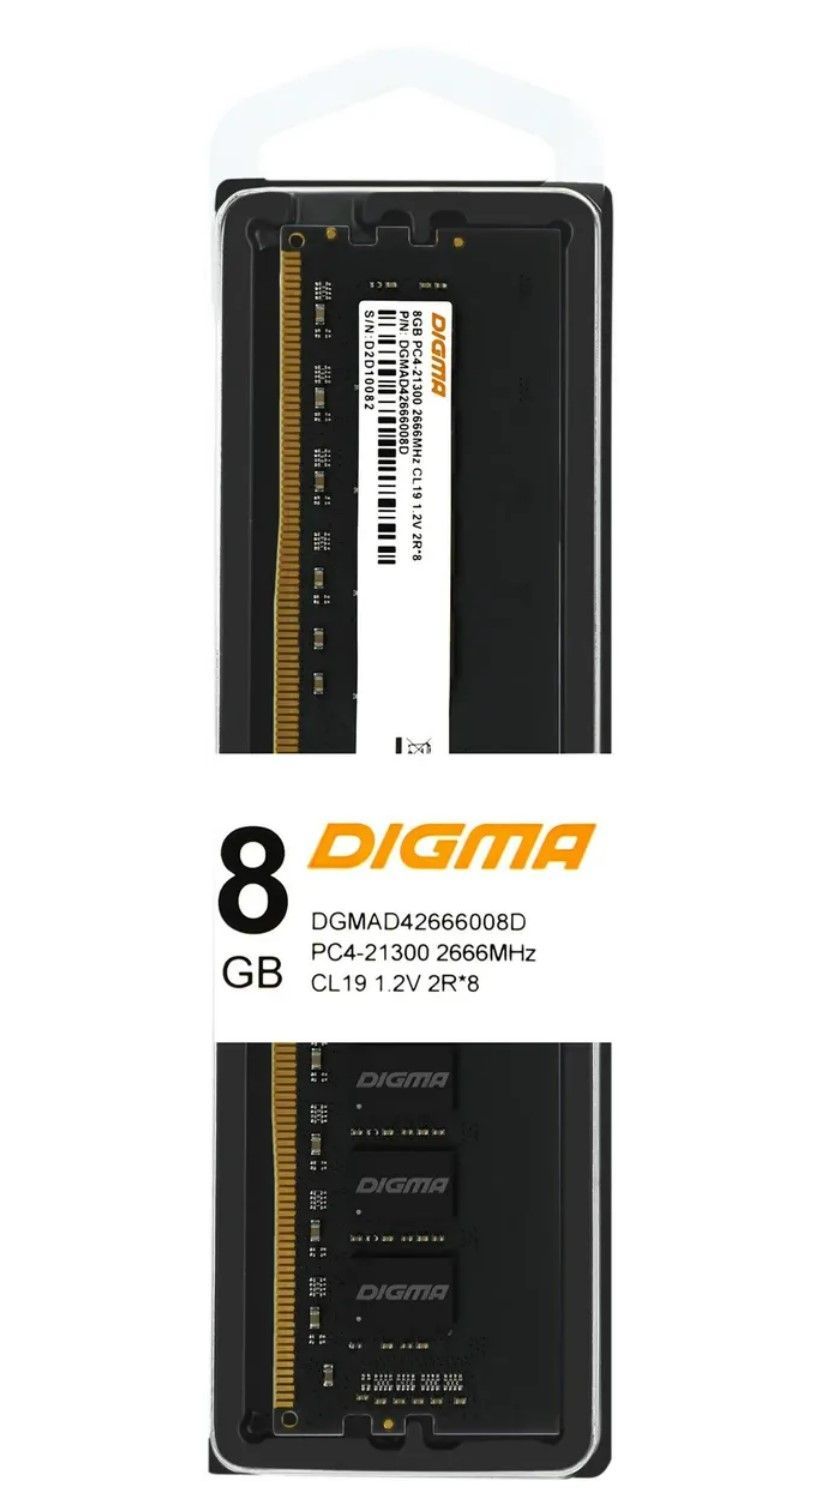 Оперативная память Digma DDR4 8Gb 2666MHz